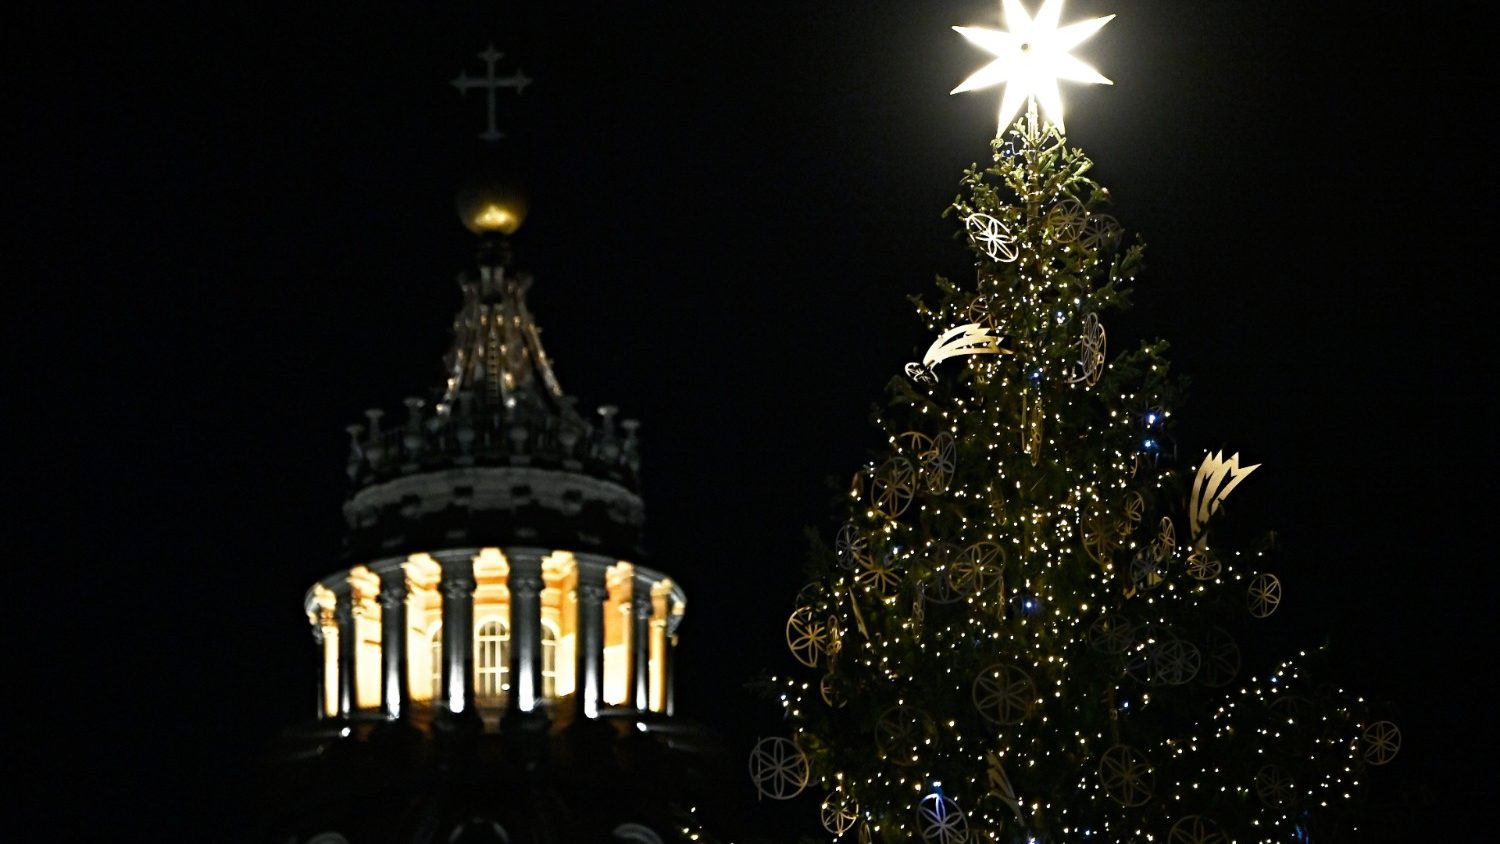 Христиане многих стран готовятся к празднованию Рождества в условиях пандемии